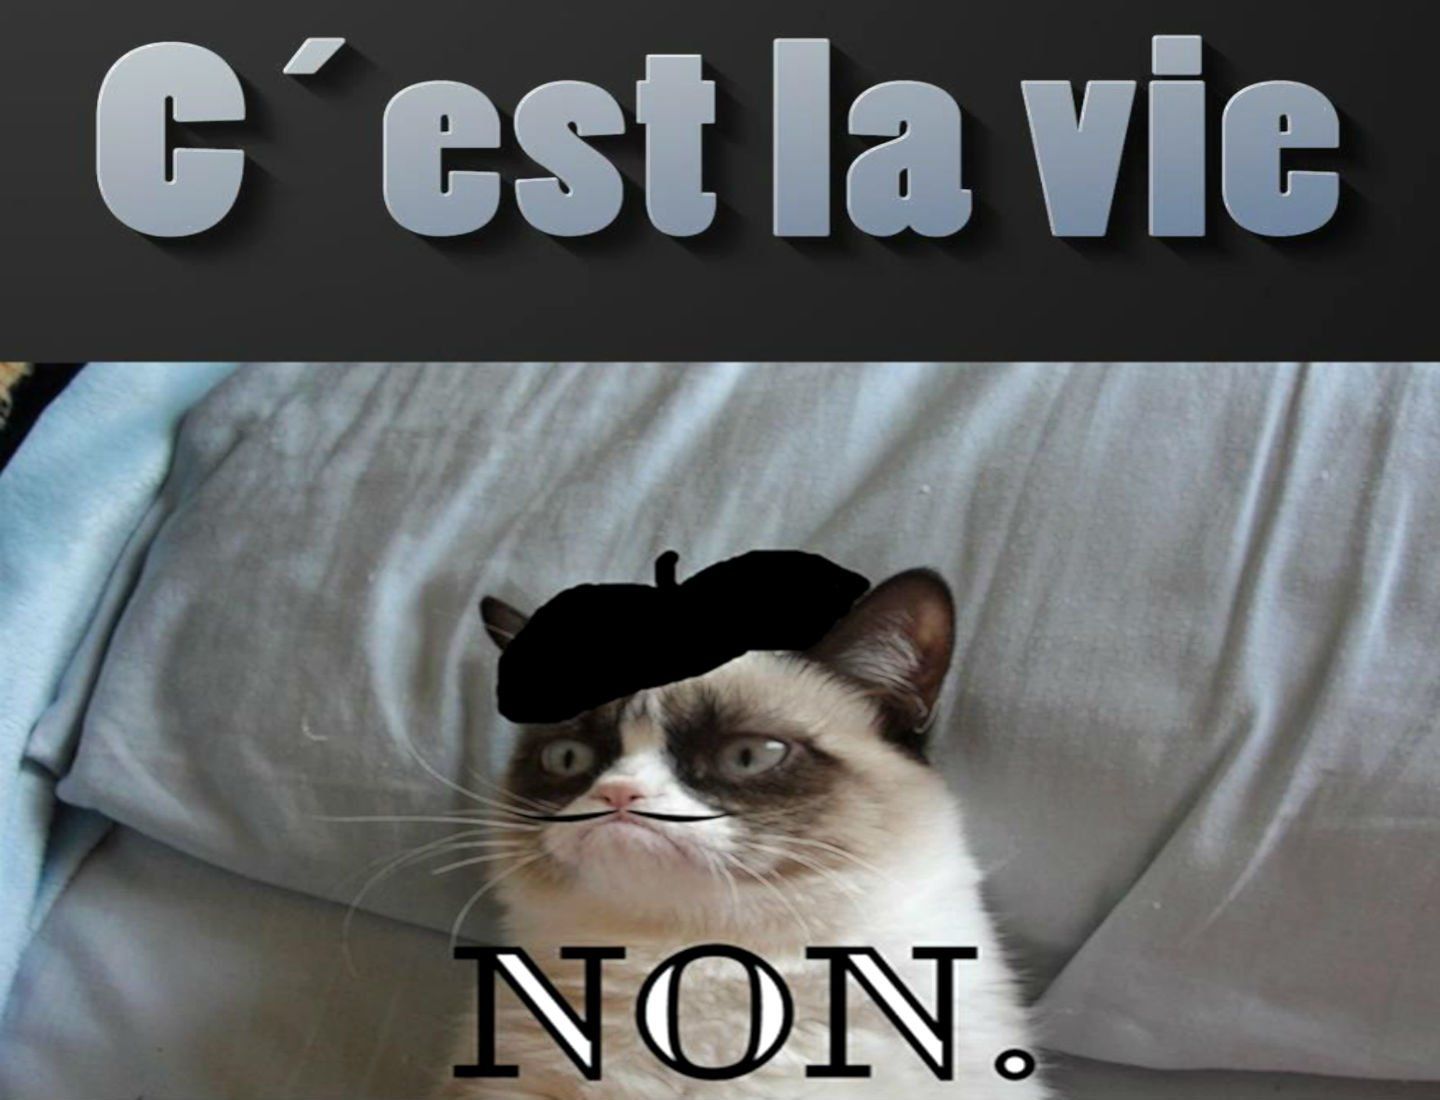 Cat meme quote funny humor grumpy french sadic wallpaperx1100